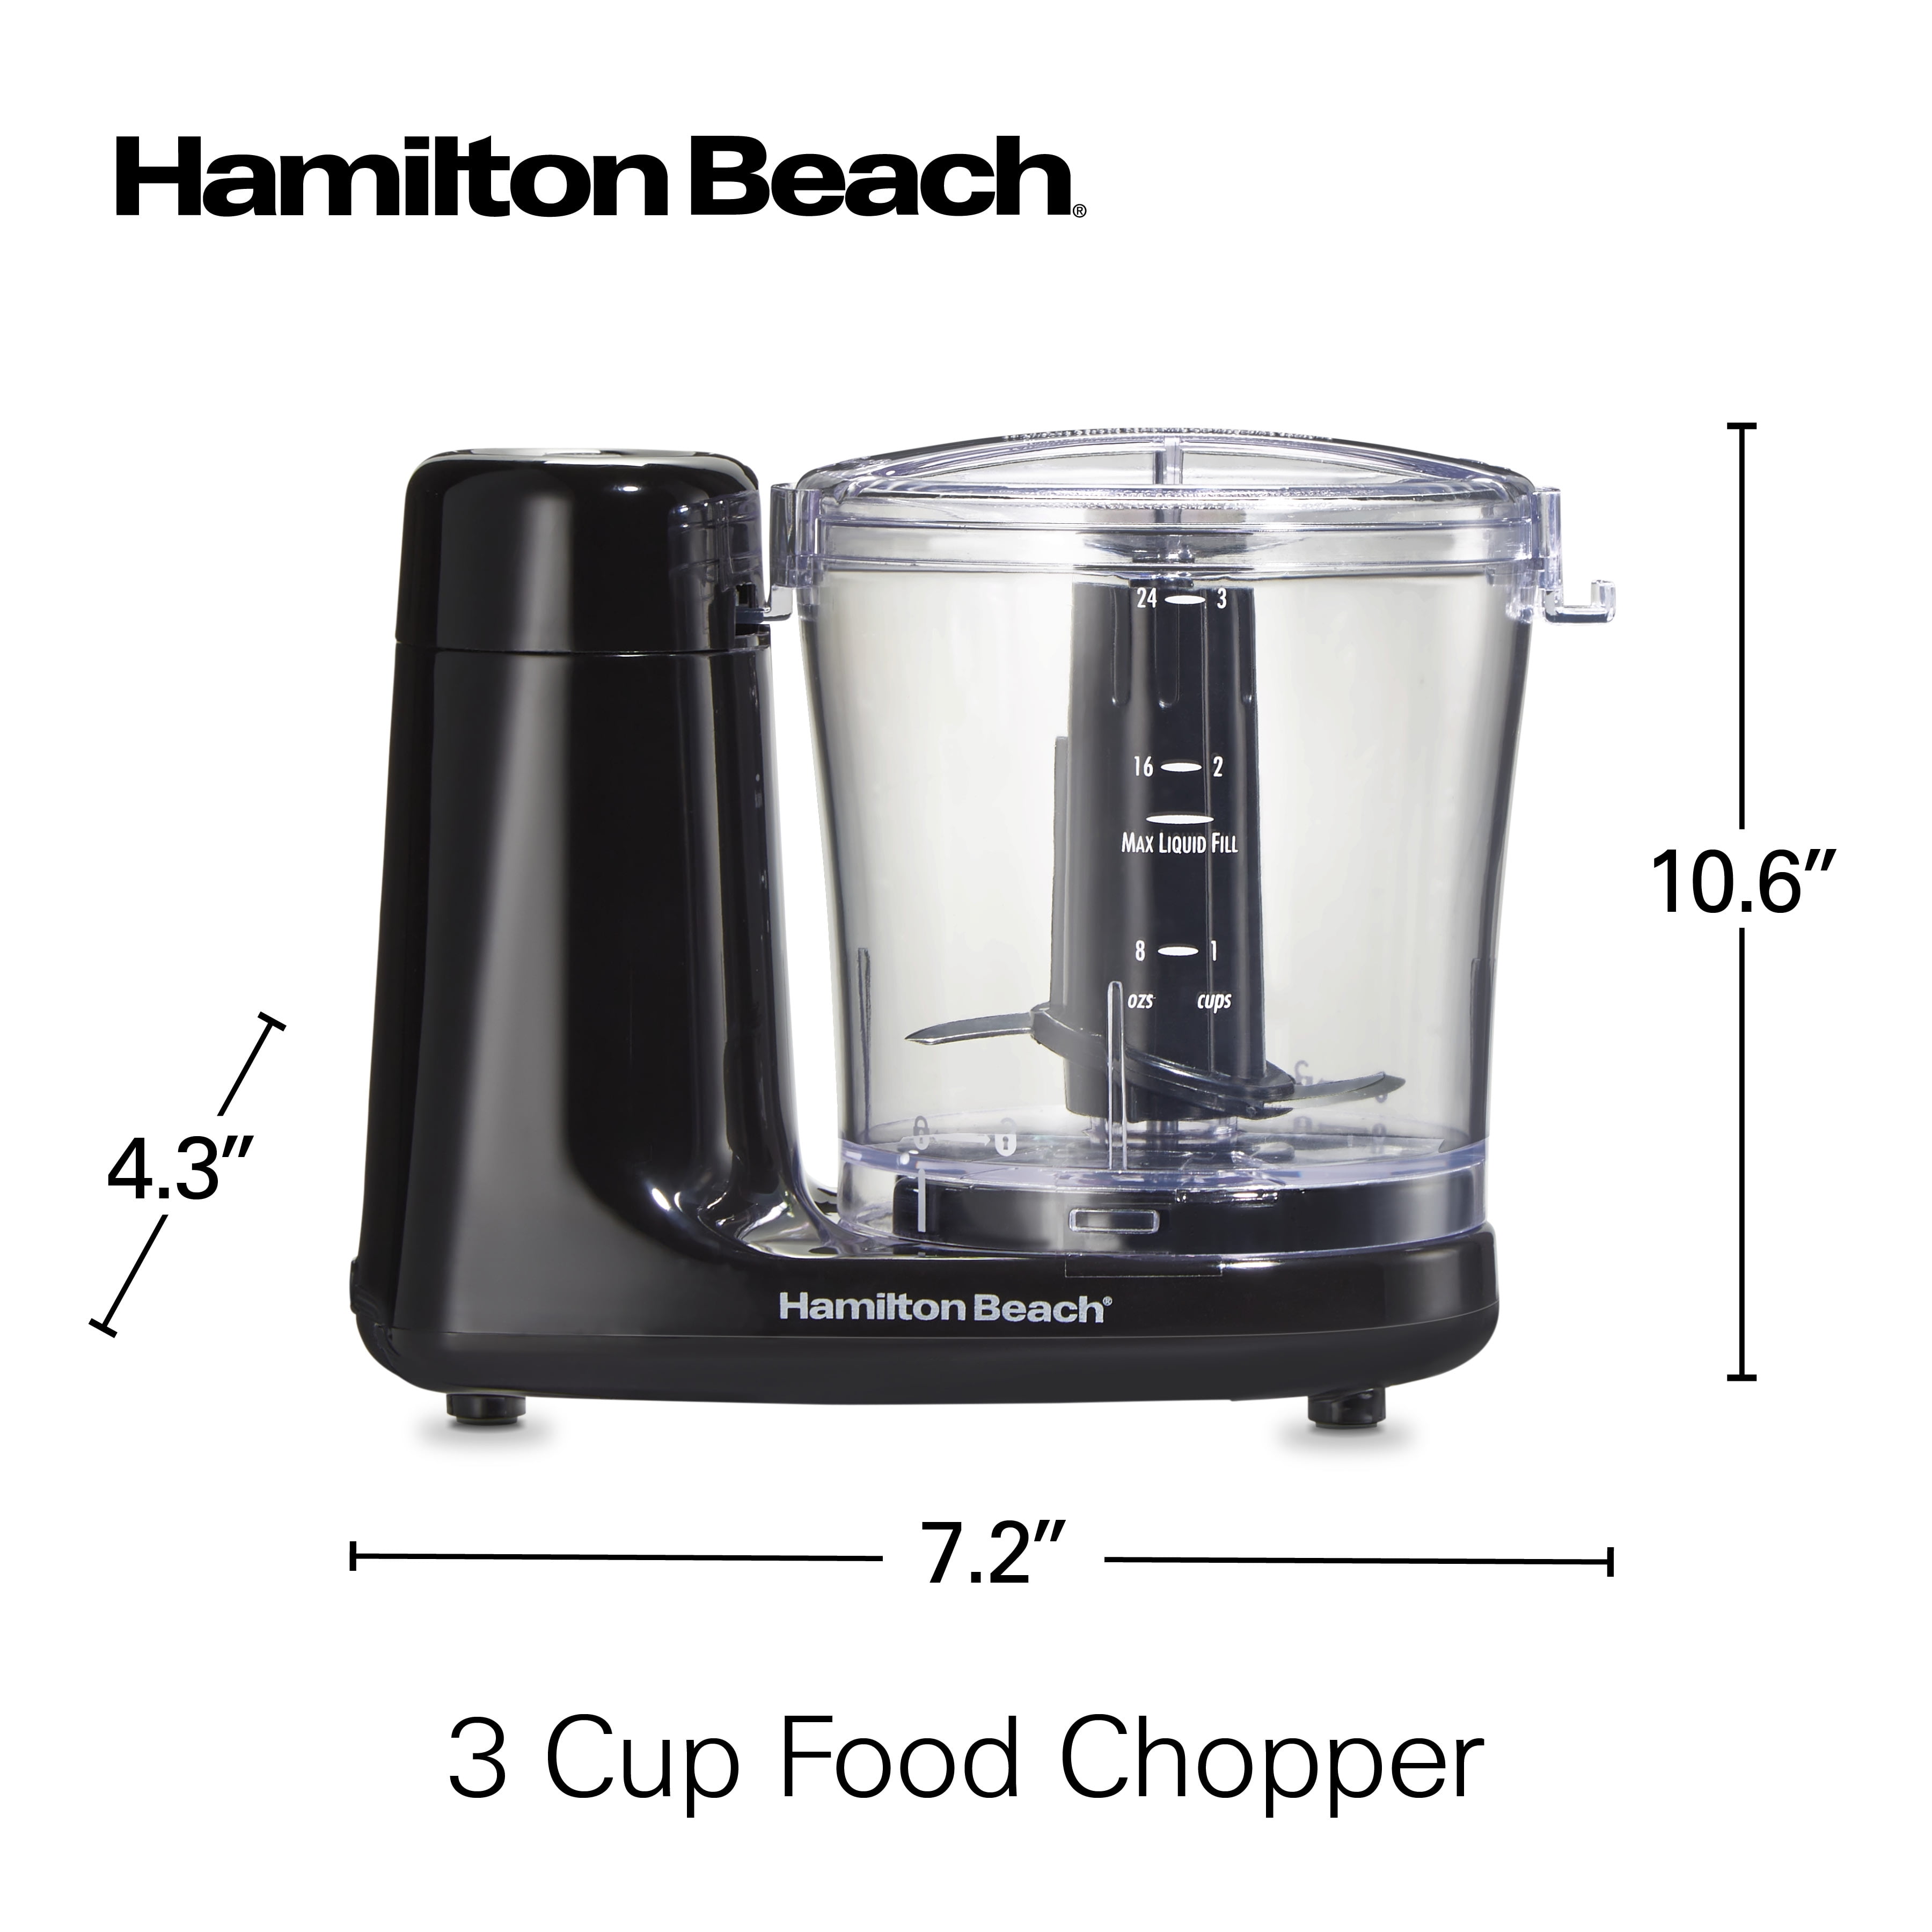 Hamilton Beach FreshChop™ 3 Cup Food Chopper - 72603